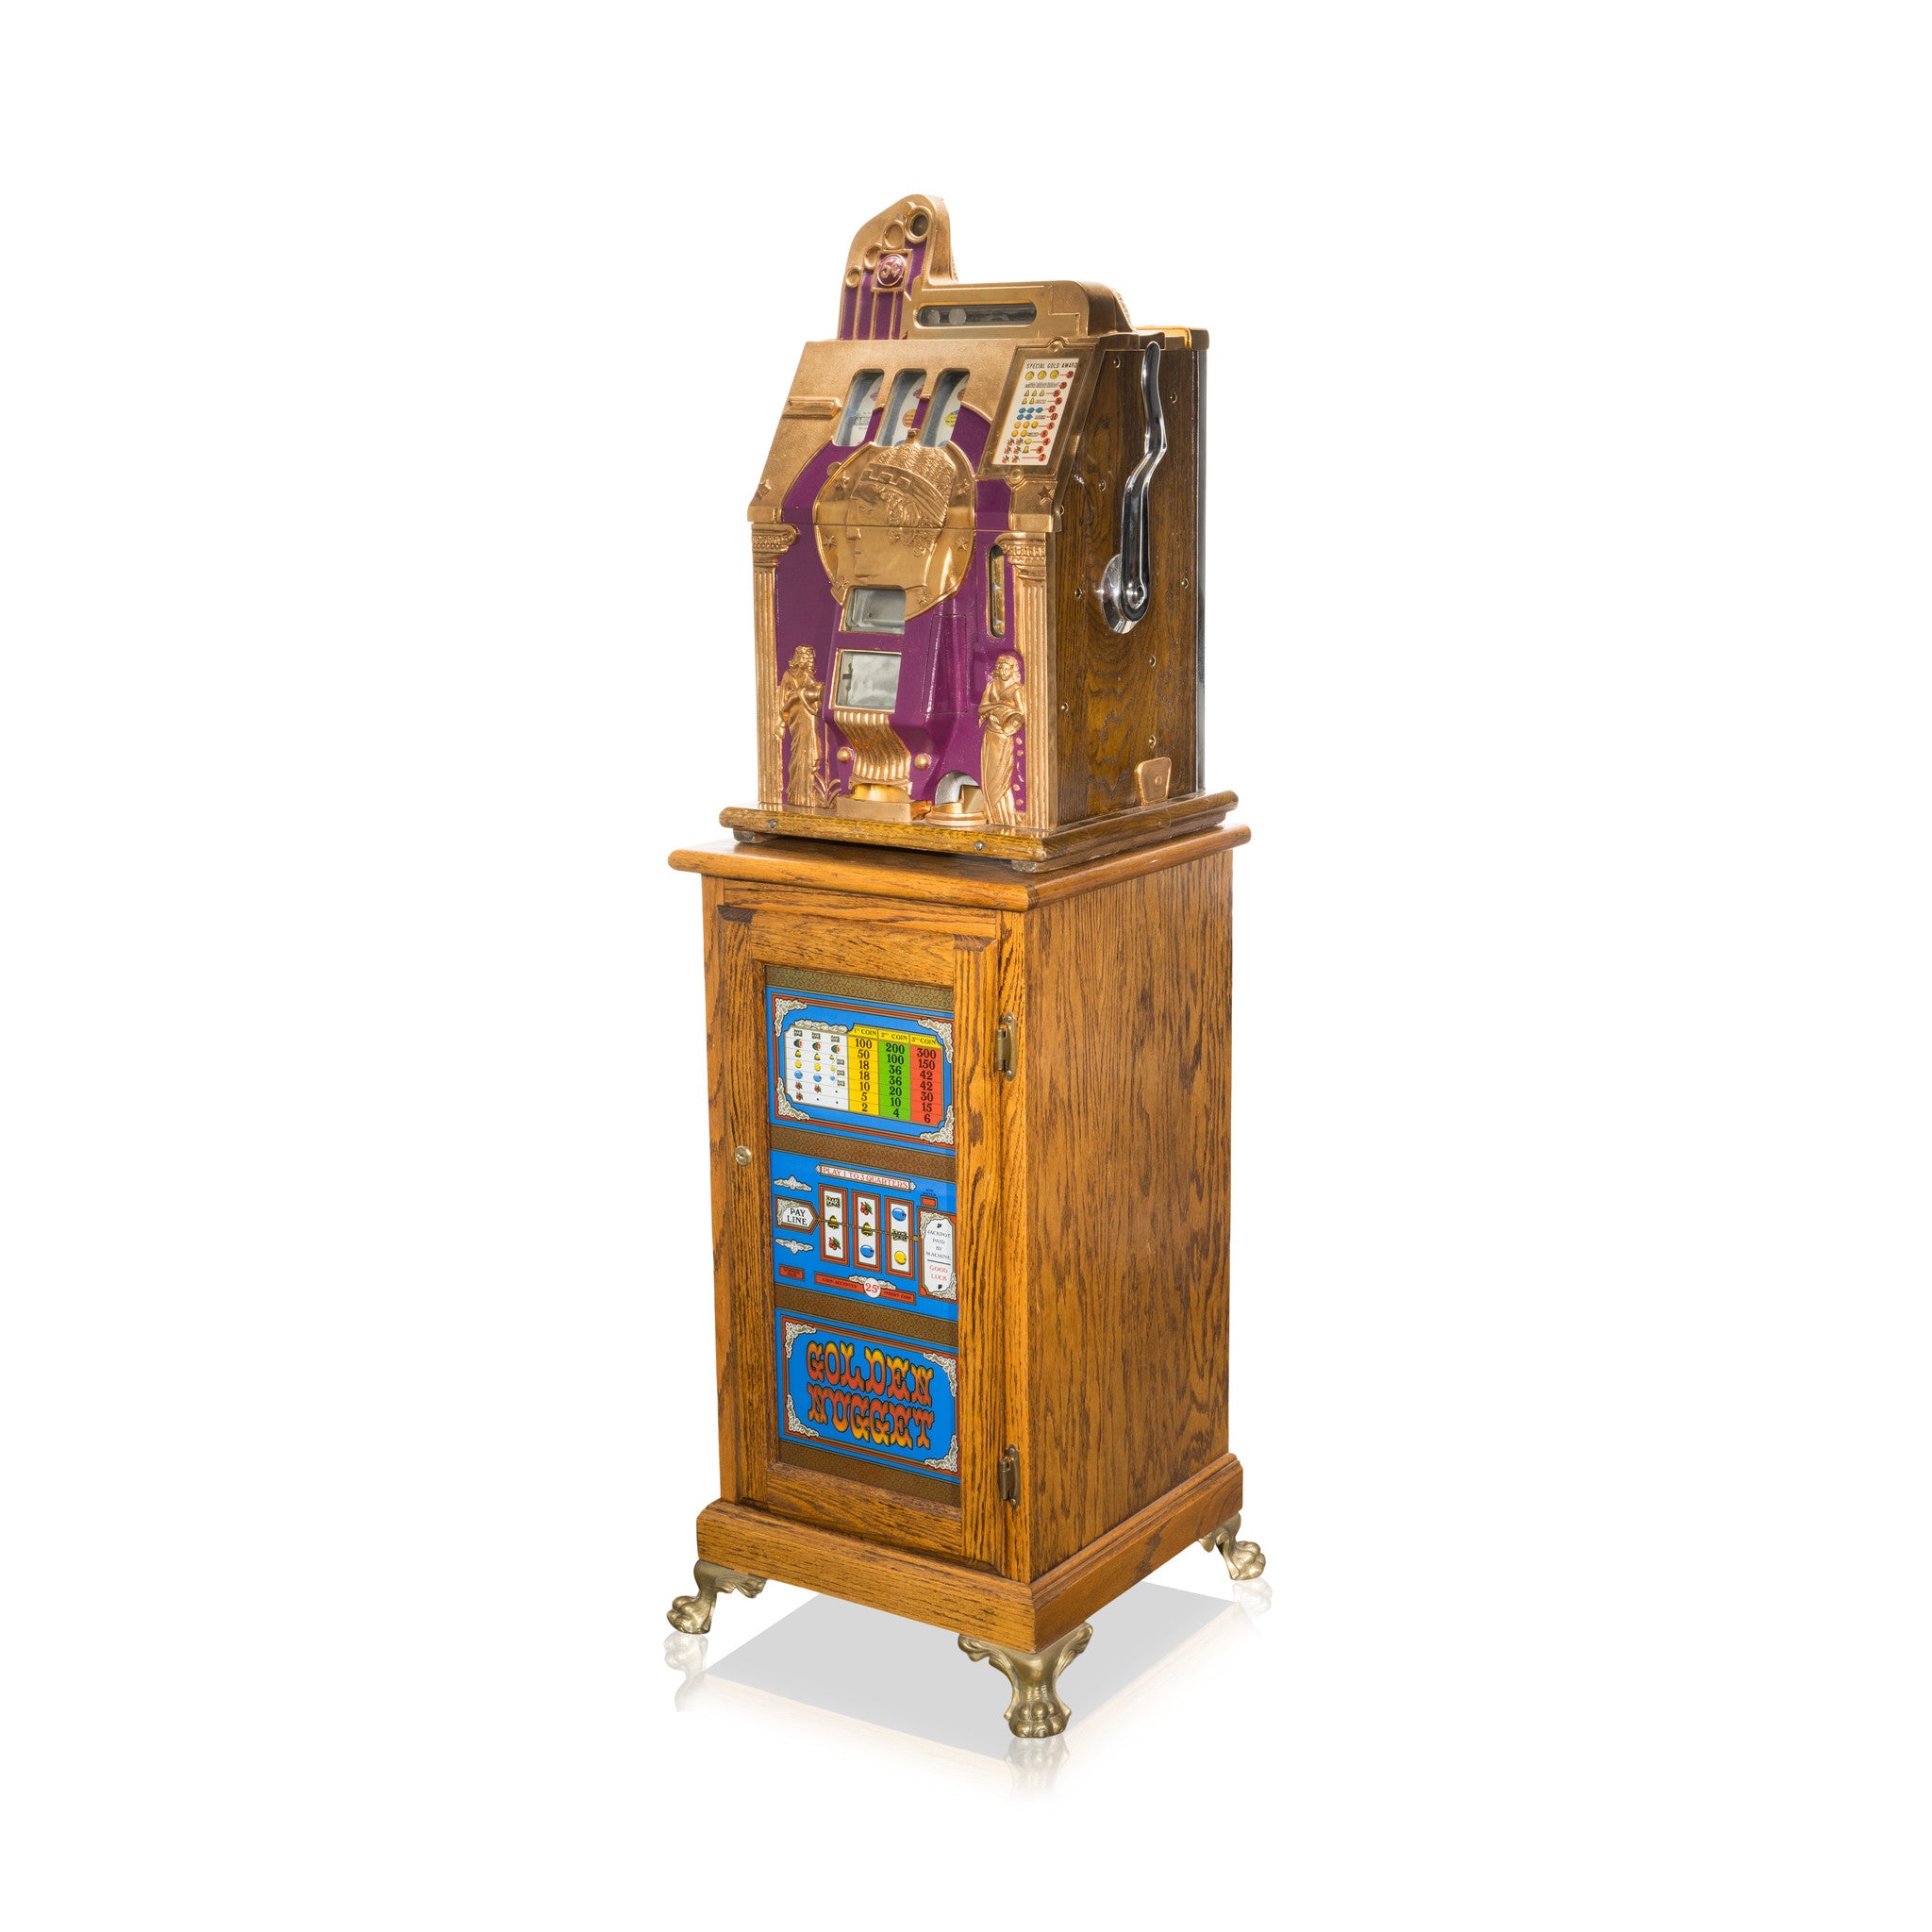 Mills Slot Machine, Western, Gaming, Gambling Wheel